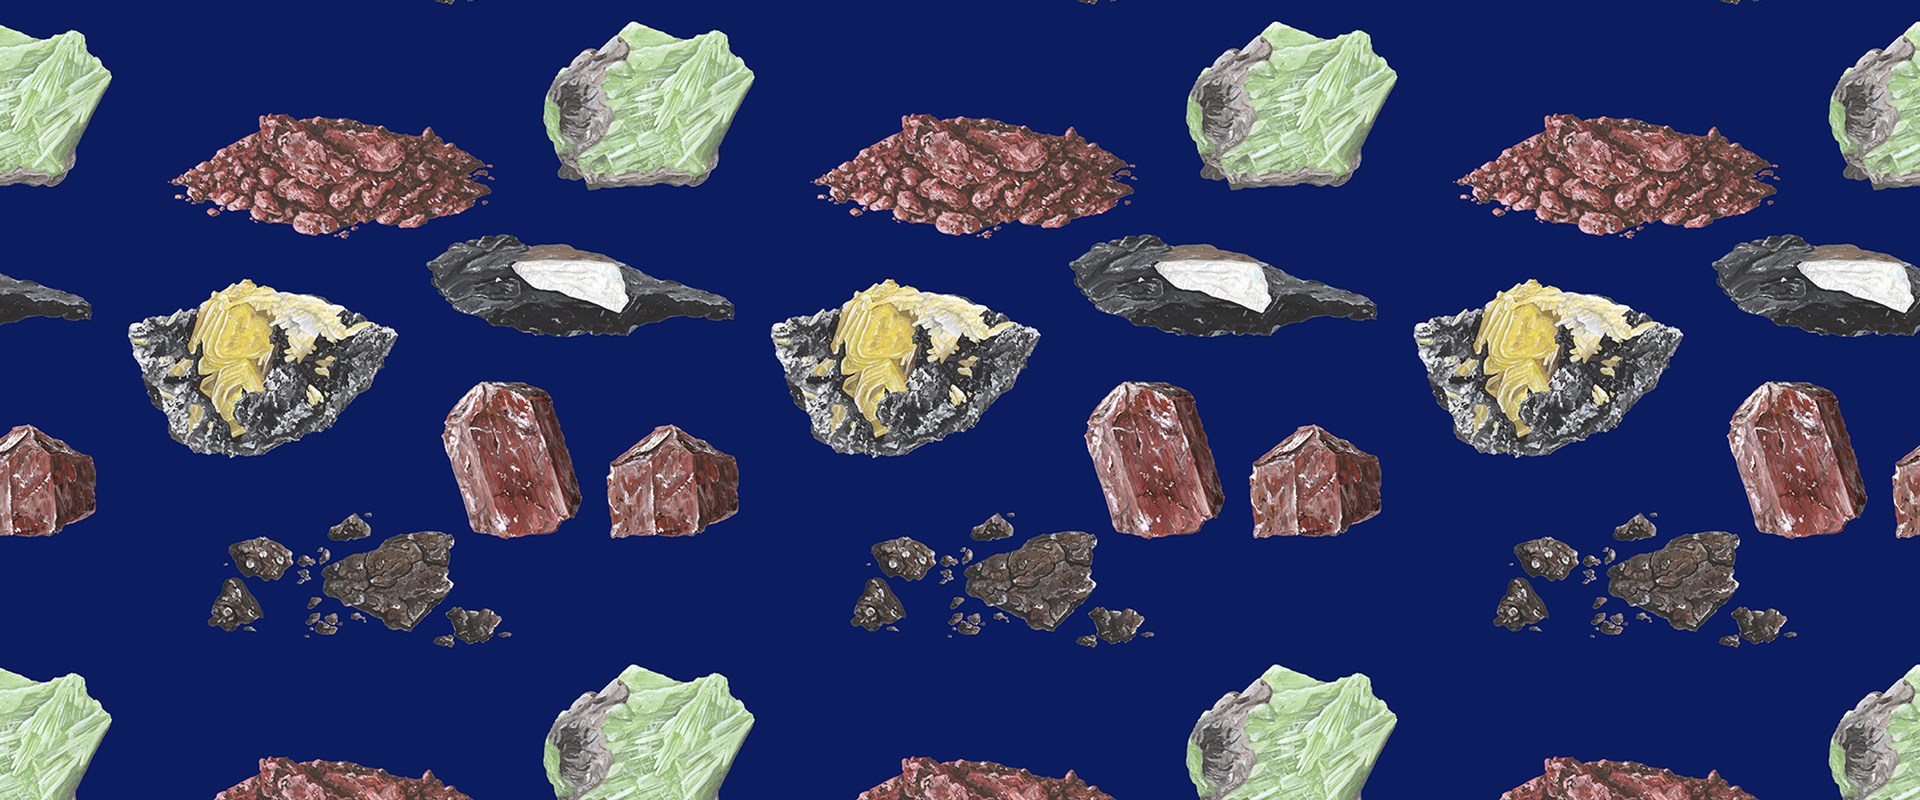 Mineral illustrations by Vojta Hýbl.